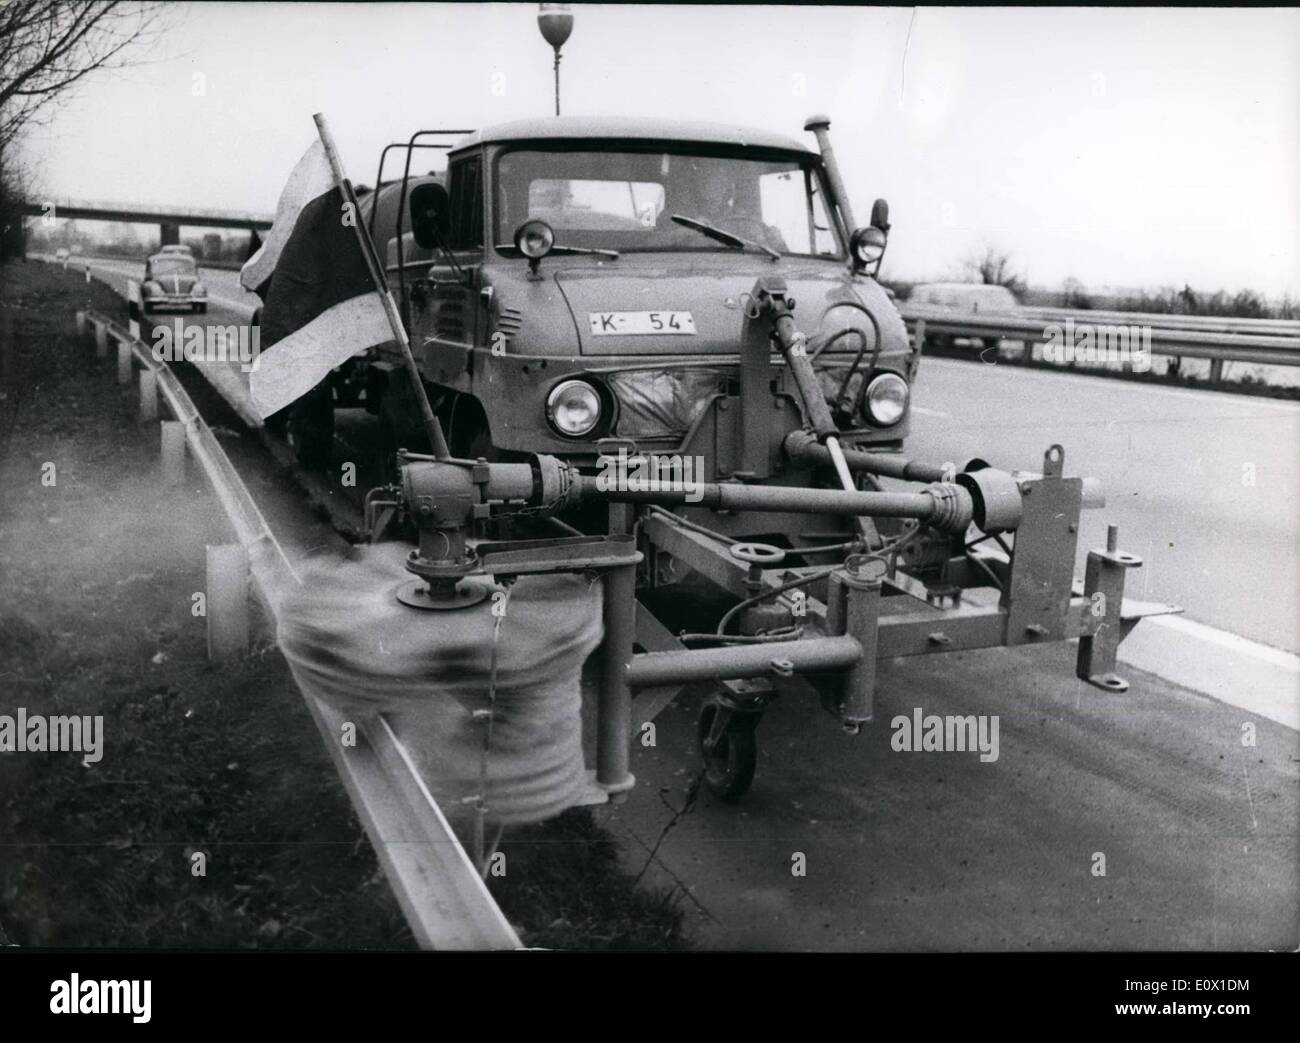 12. Dezember 1964 - Seite Planken der Autobahn mit einer neuen speziellen Maschine arbeiten im Raum Köln gewaschen. Die Seite Planken müssen sauber sein, so dass sie eine Sicherheitseinrichtung auf den schnellen deutschen Autobahnen sind. An einem Tag können 15 Kilometer der Stahl Planken mit der Maschine bereinigt werden. Stockfoto